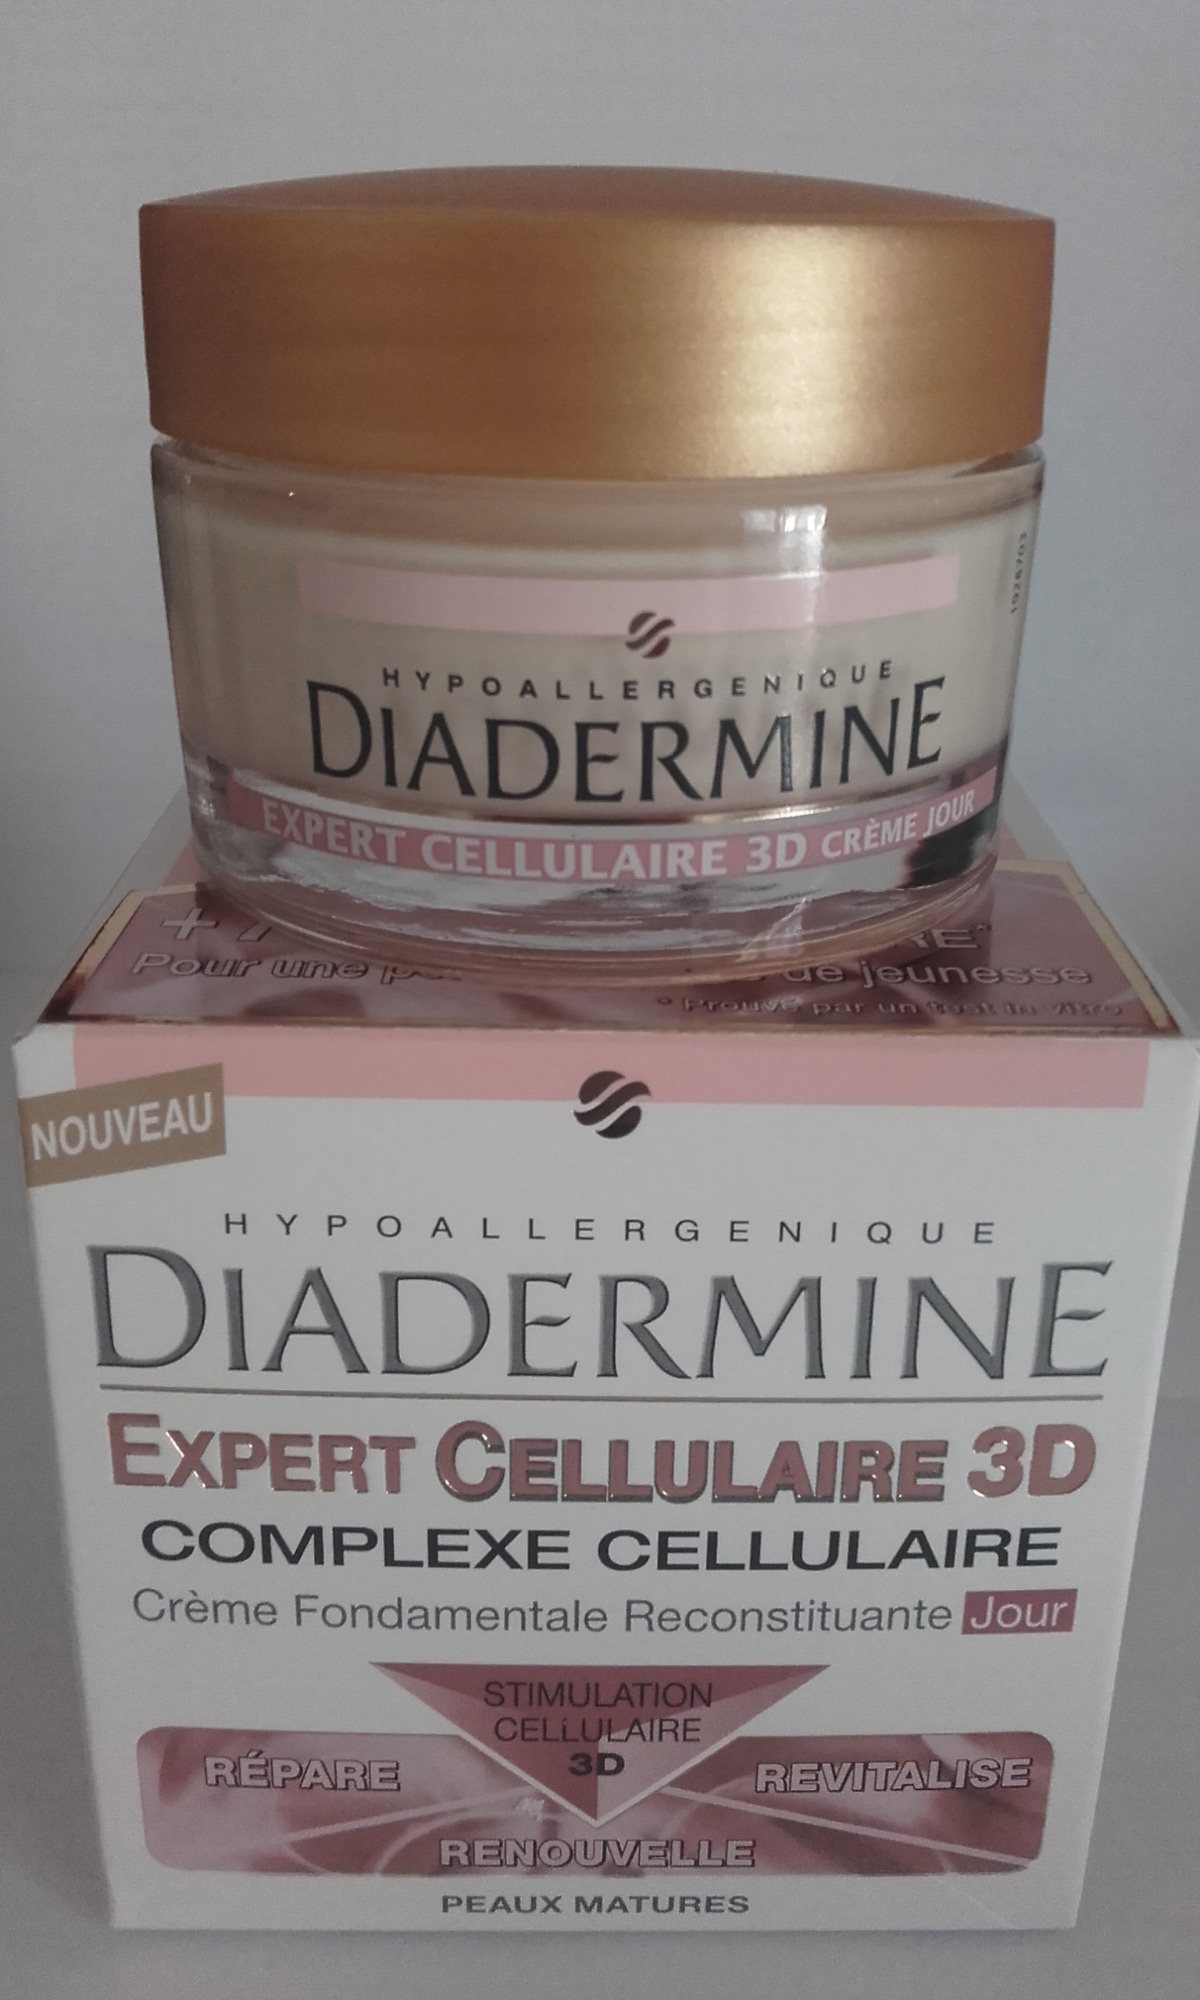 Expert Cellulaire 3D Crème Fondamentale Reconstituante Jour - Product - fr